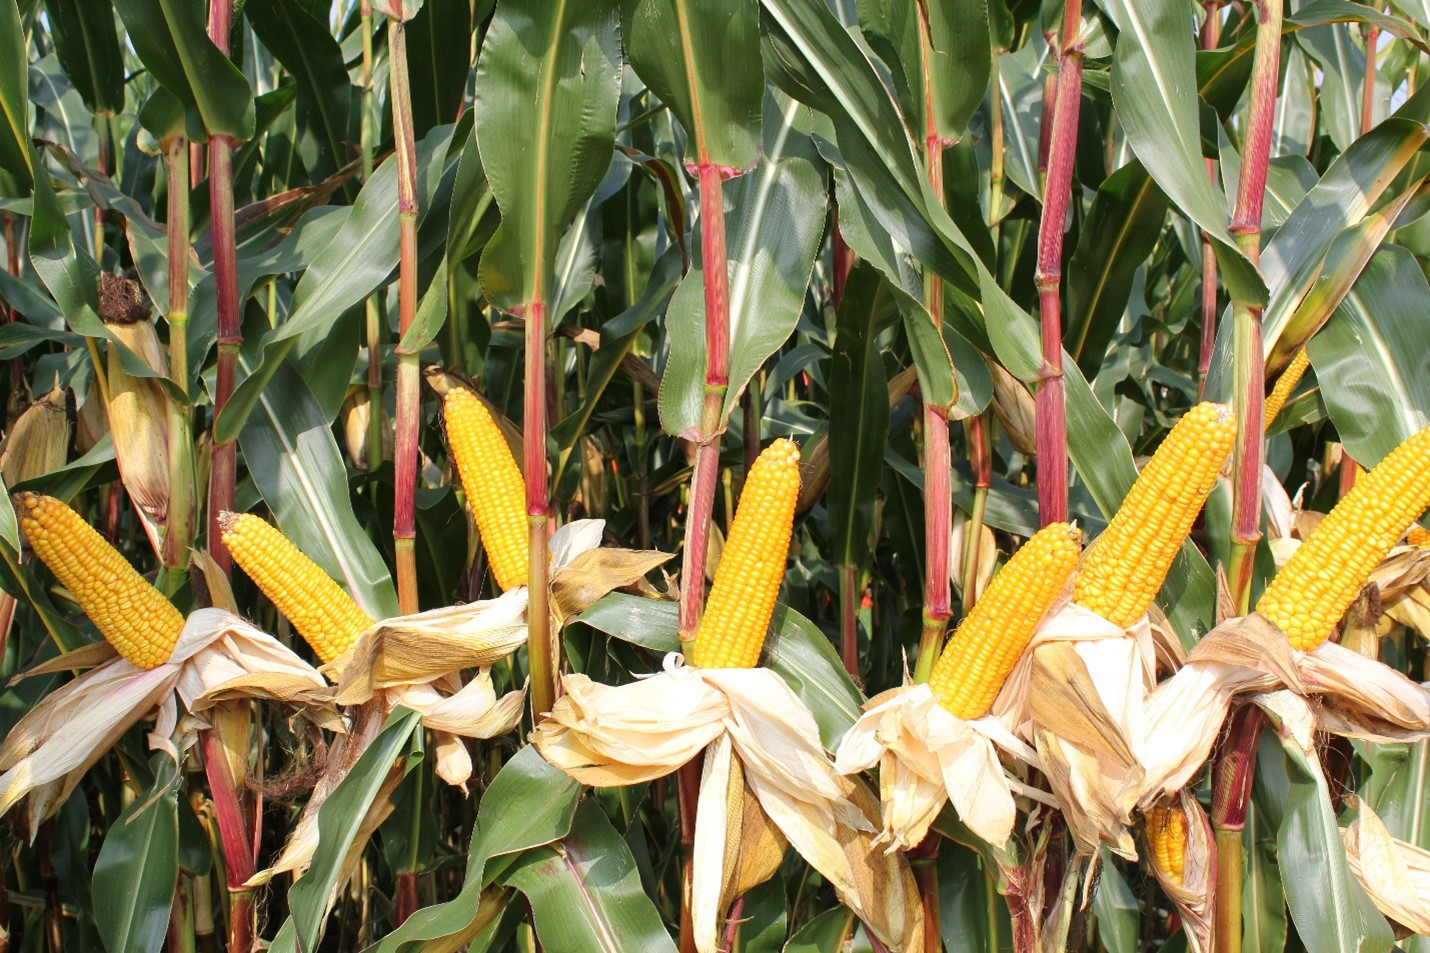 Maïs-als-belangrijke-energieproducent-op-het-eigen-bedrijf-in-de-vorm-van-zetmeel.jpg